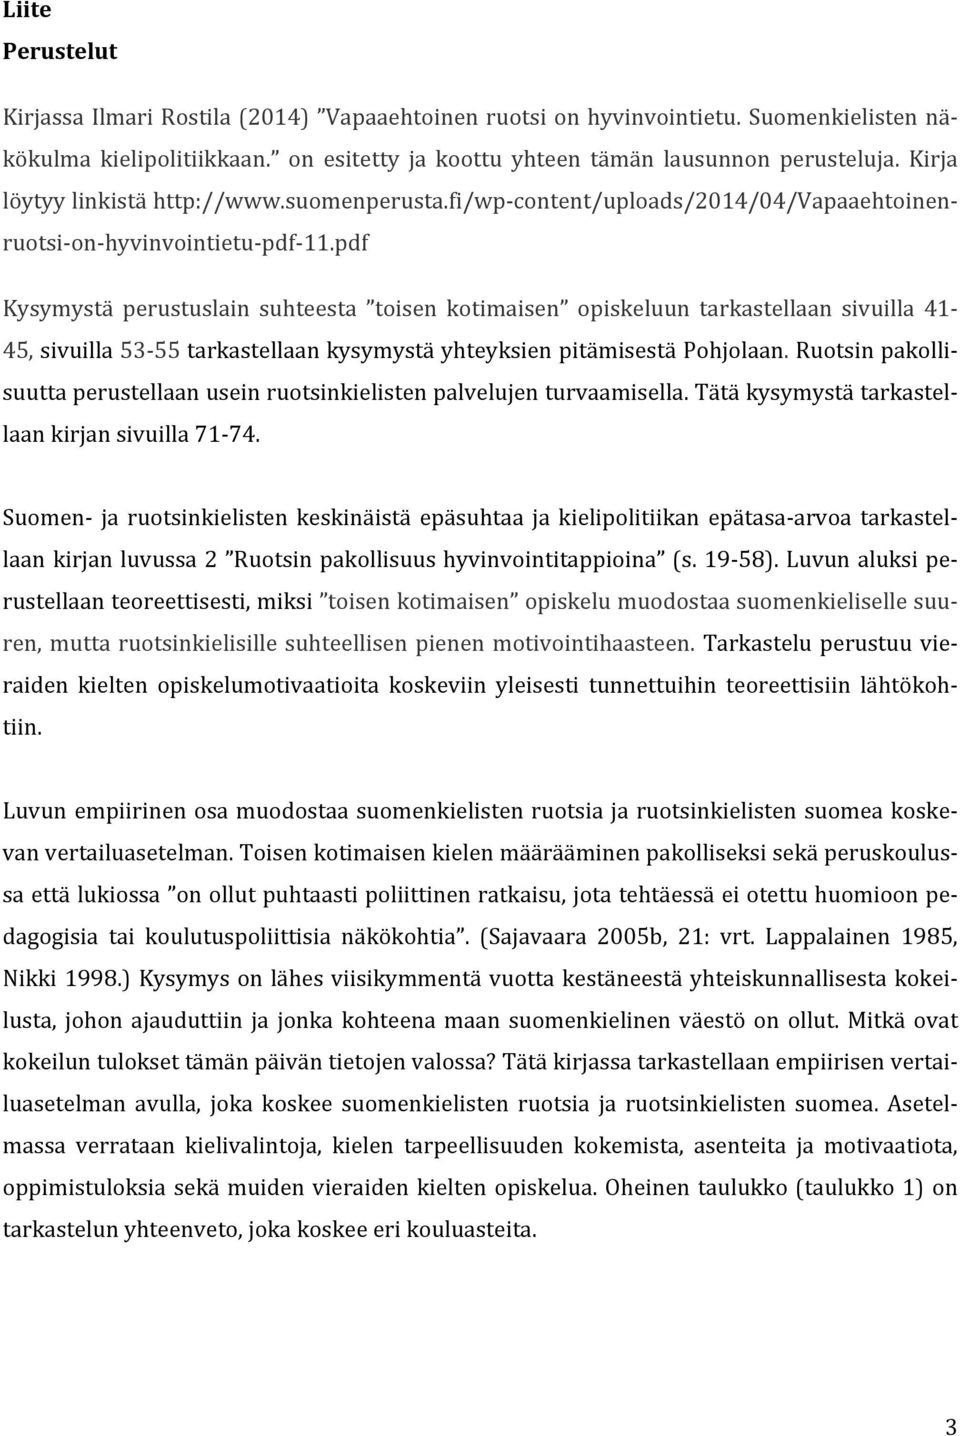 pdf Kysymystä perustuslain suhteesta toisen kotimaisen opiskeluun tarkastellaan sivuilla 41 45, sivuilla 5355 tarkastellaan kysymystä yhteyksien pitämisestä Pohjolaan.